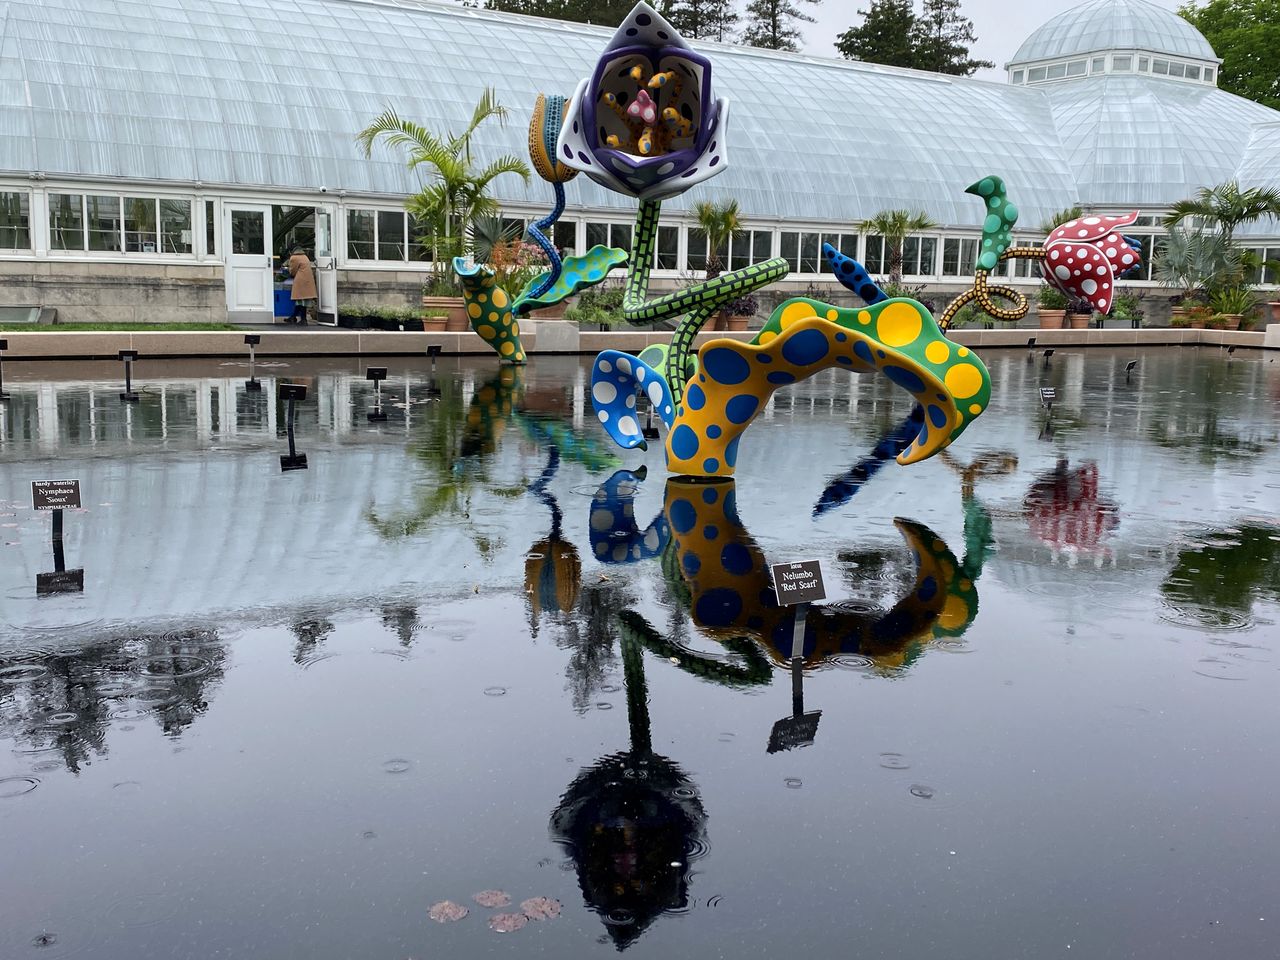 Instalaciones florales de acero pintadas en tonos vibrantes de amarillo y rosa, verde y azul, cubiertas de lunares, Jardín Botánico de Nueva York, EEUU, 5 mayo 2021.
REUTERS/Roselle Chen